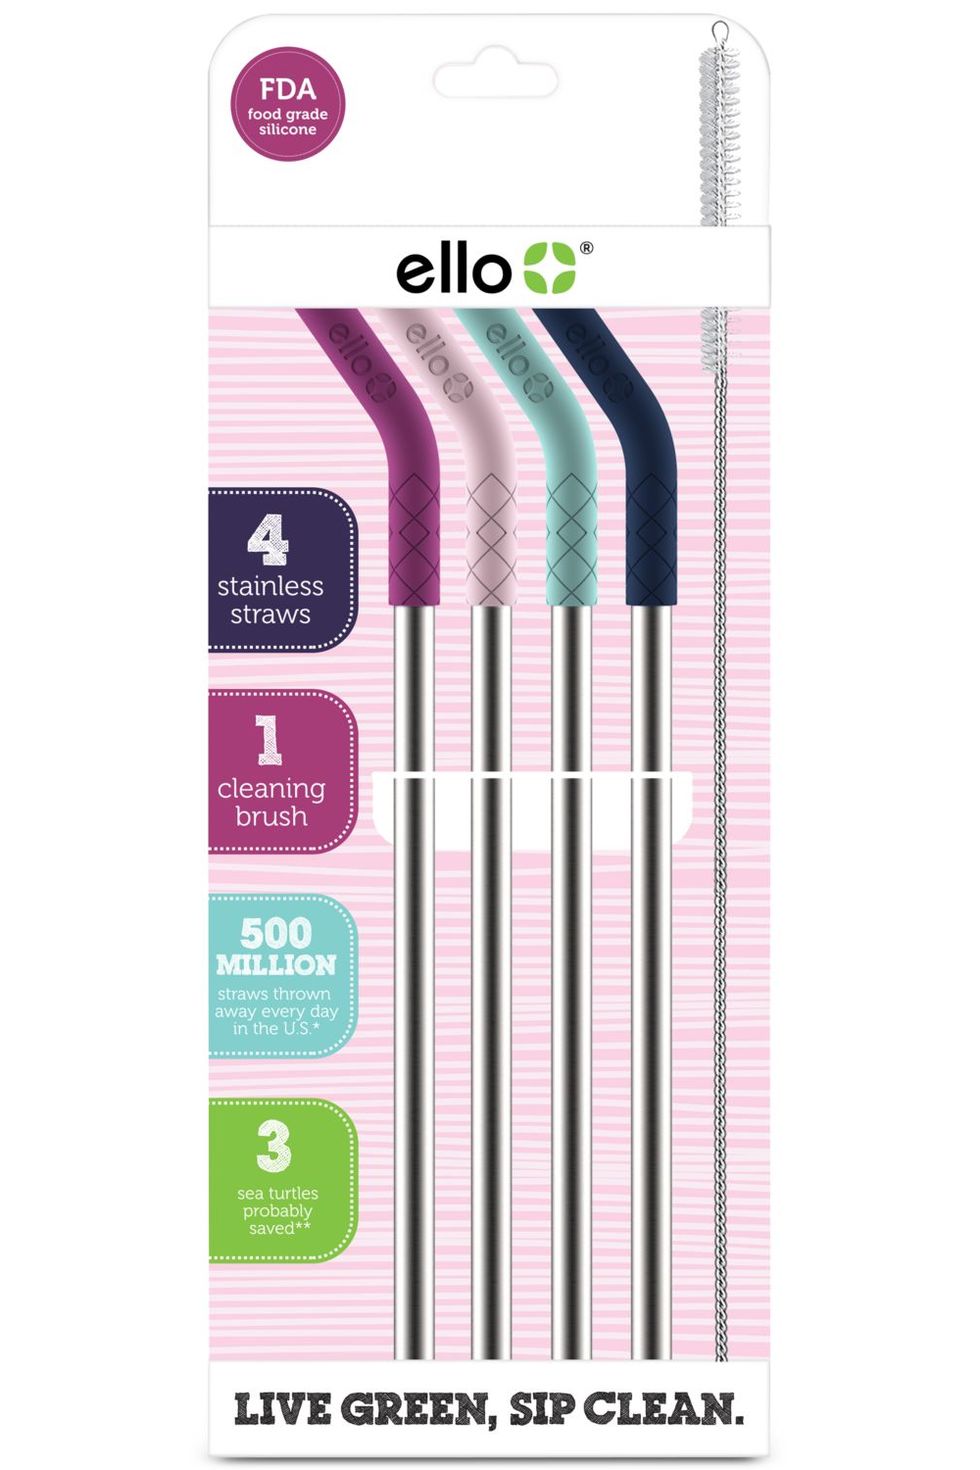 Ello Bottle & Straw Brush